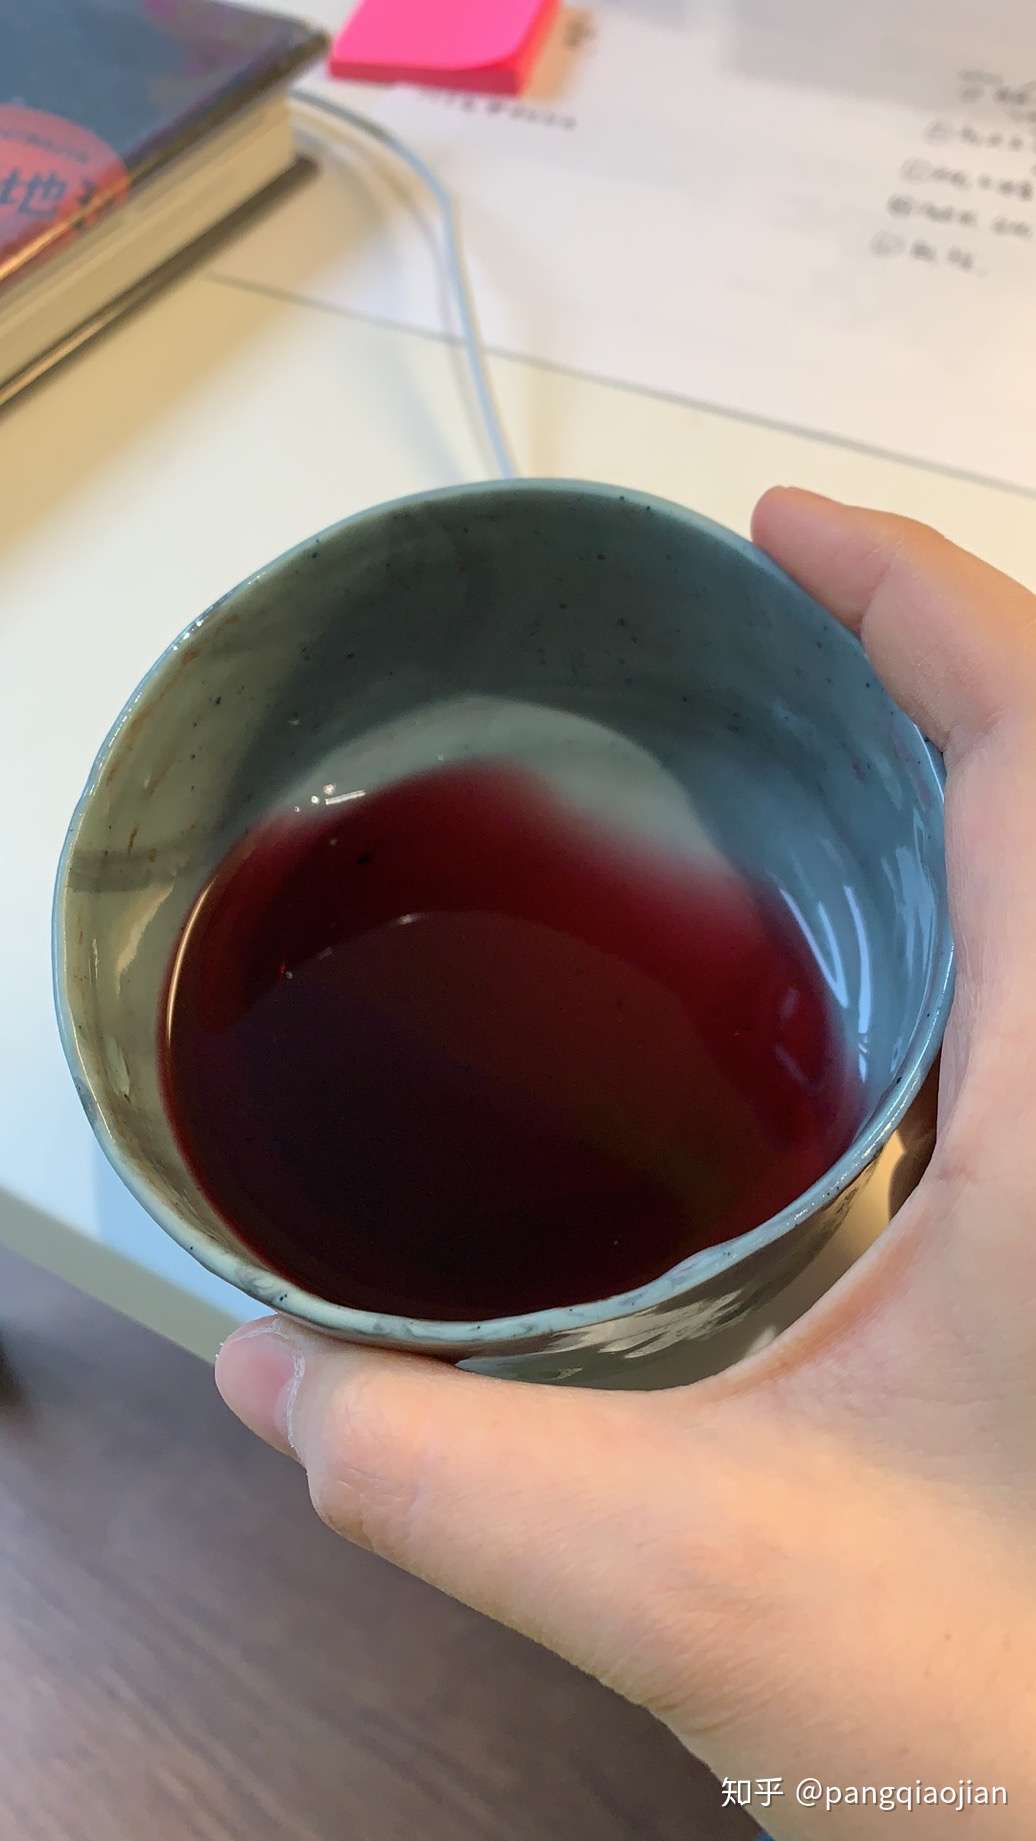 pangqiaojian 的想法: 用小破碗喝法国红酒,还是我朋友自己用手